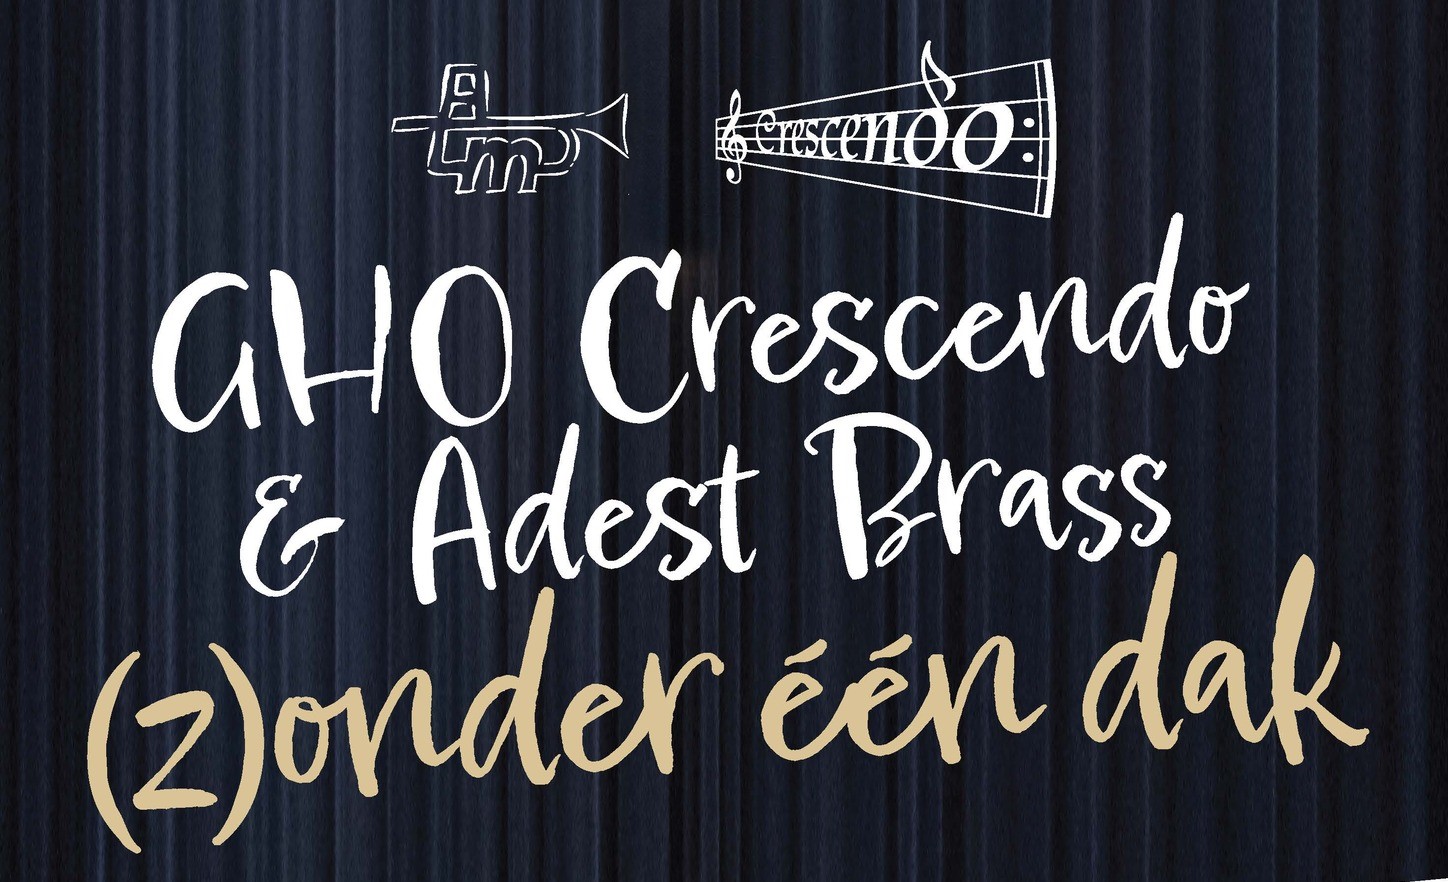 GHO Crescendo & Adest Brass (z)onder een